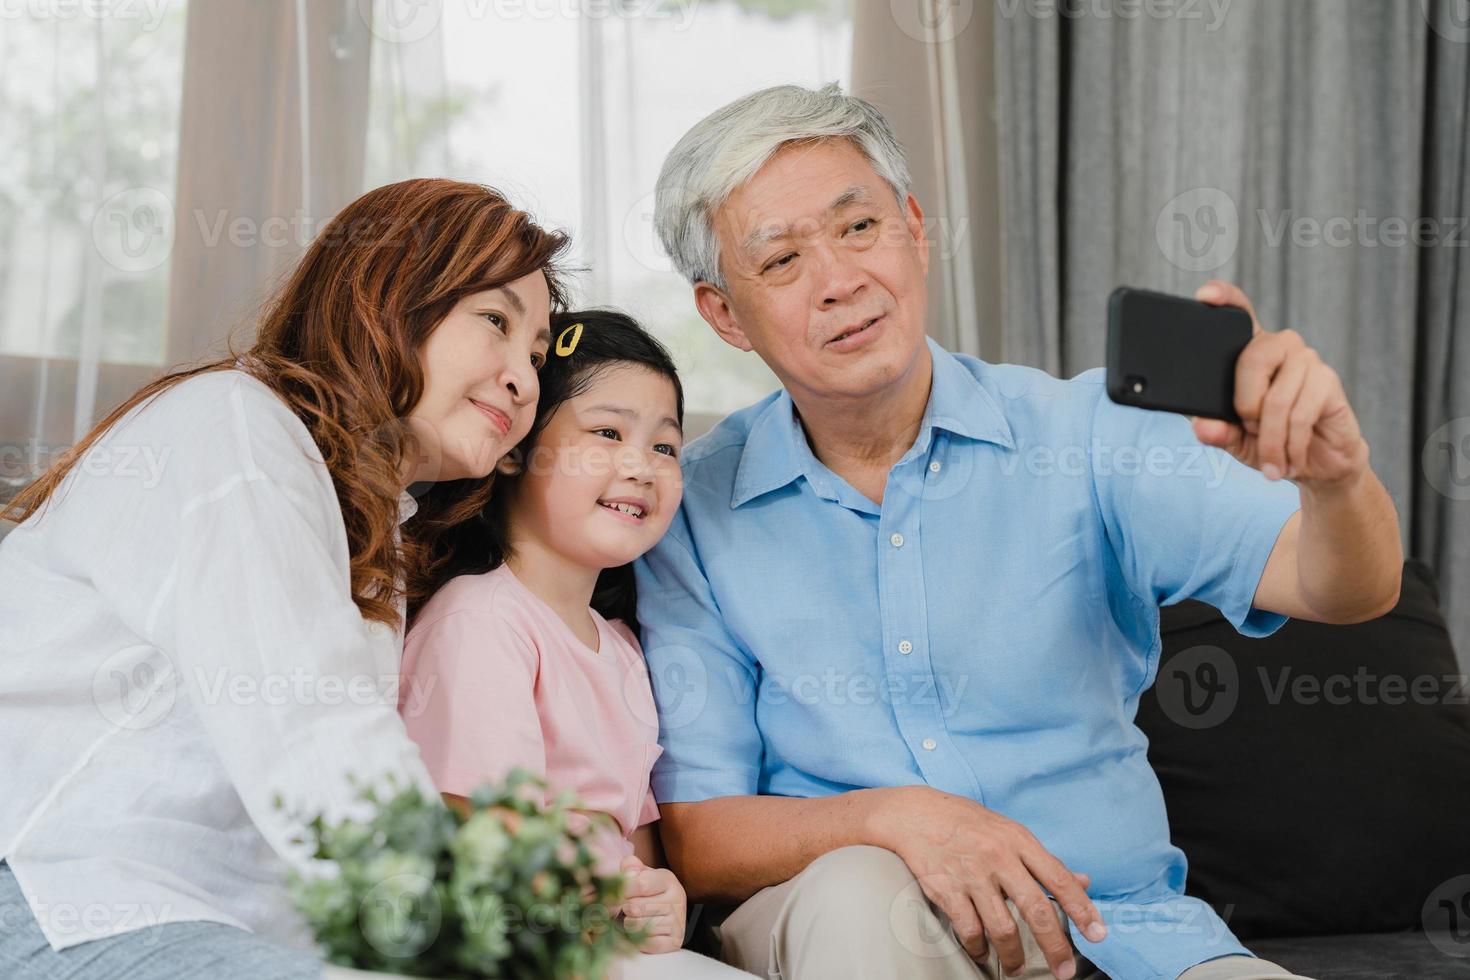 grands-parents asiatiques selfie avec petite-fille à la maison. chinois senior, grand-père et grand-mère heureux de passer du temps en famille à se détendre à l'aide d'un téléphone portable avec une jeune fille allongée sur un canapé dans le concept du salon. photo